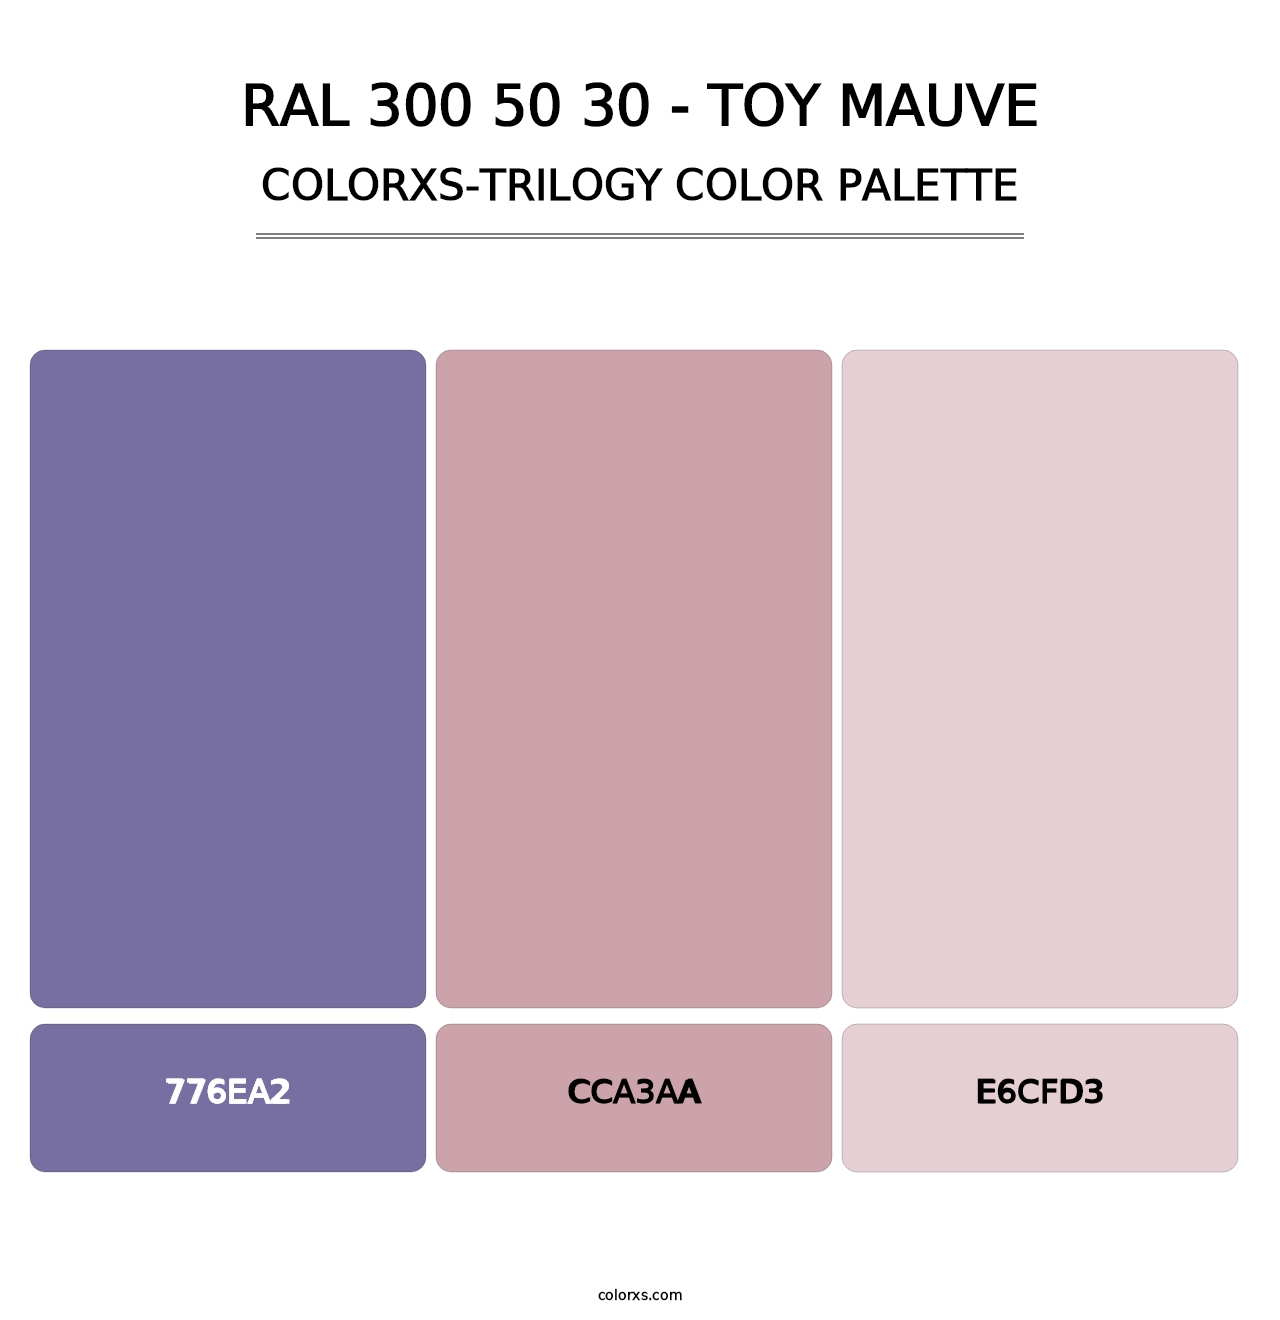 RAL 300 50 30 - Toy Mauve - Colorxs Trilogy Palette